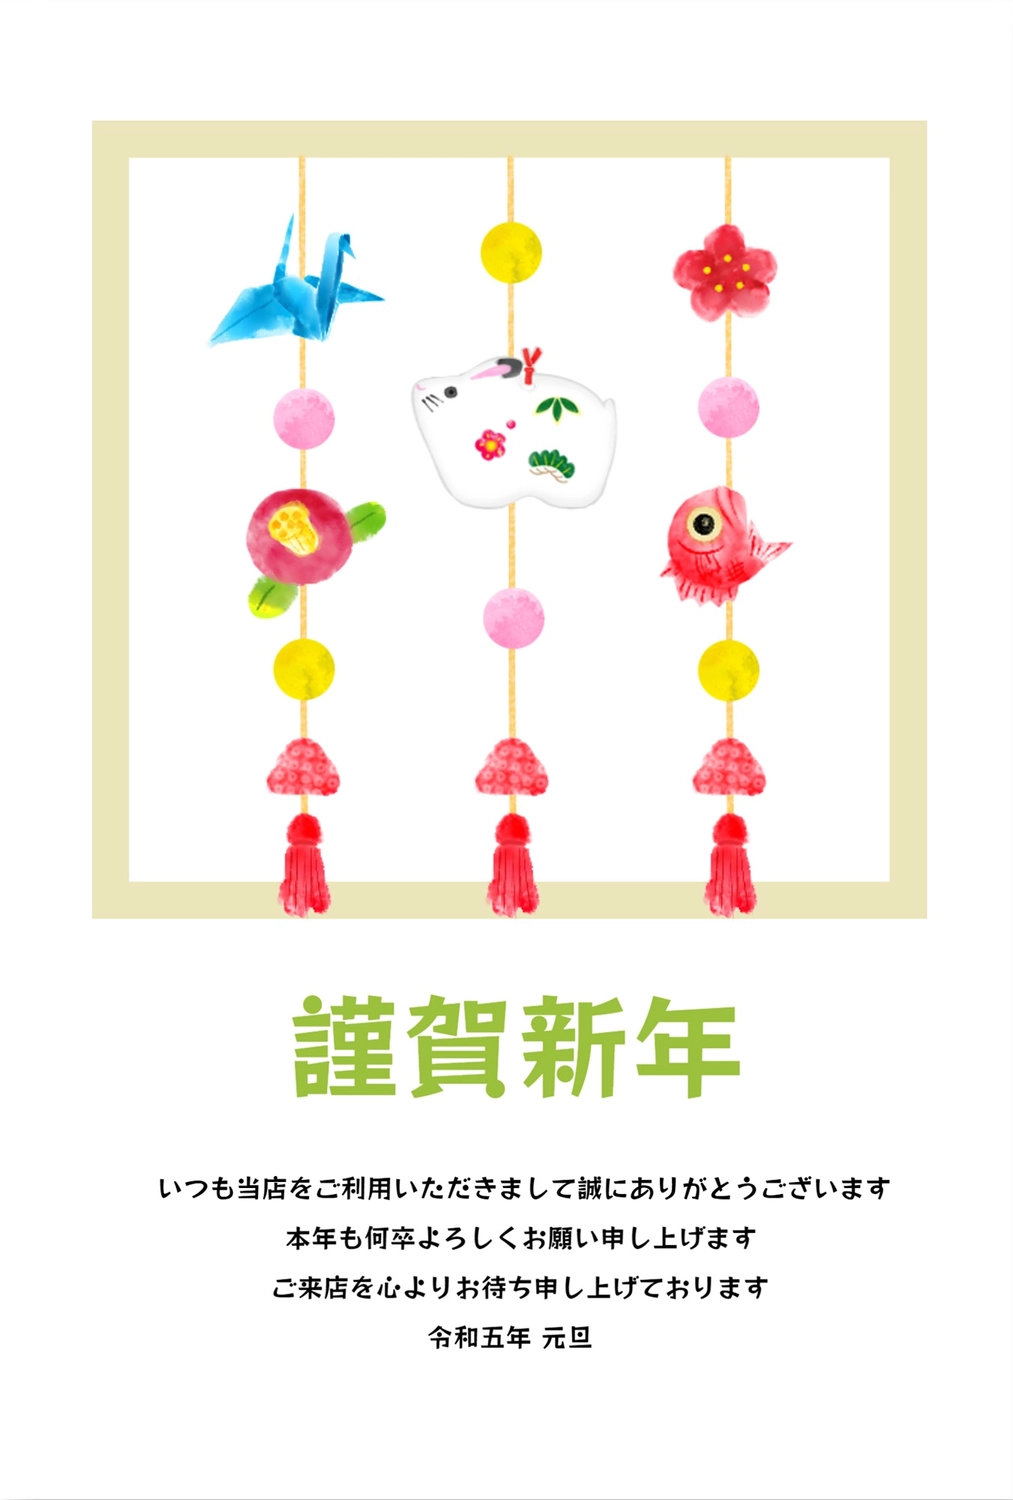 年賀状　餅花飾り, 正月飾り, つるし飾り, 餅花飾り, Thiệp năm mới mẫu